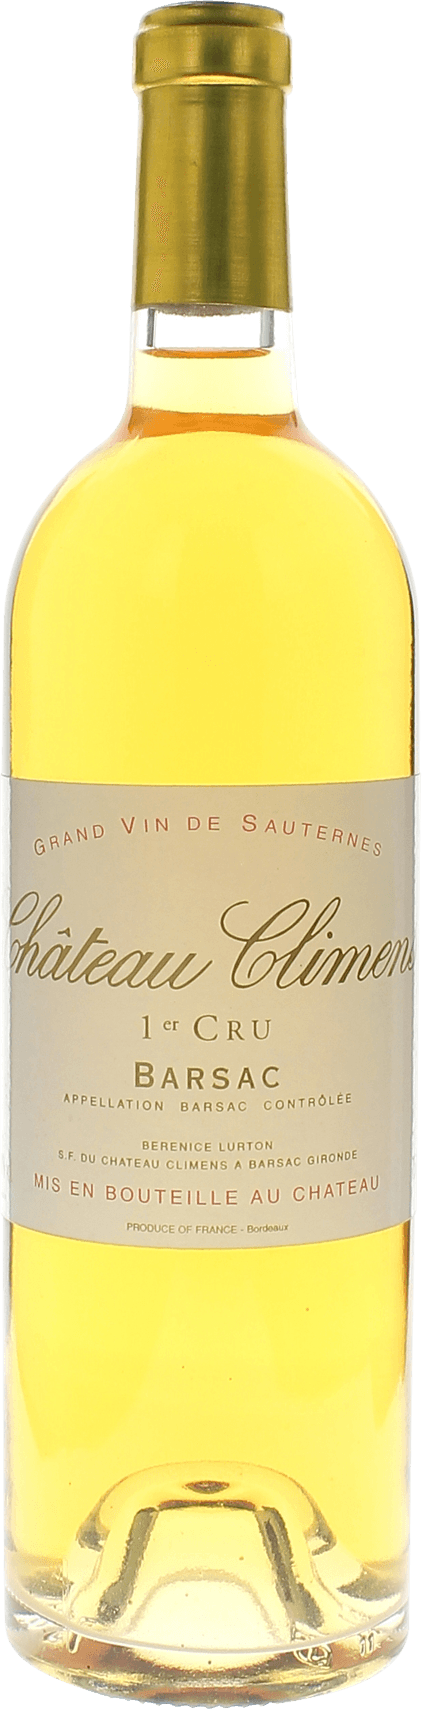 Climens 1997 1er cru Sauternes Barsac, Bordeaux blanc